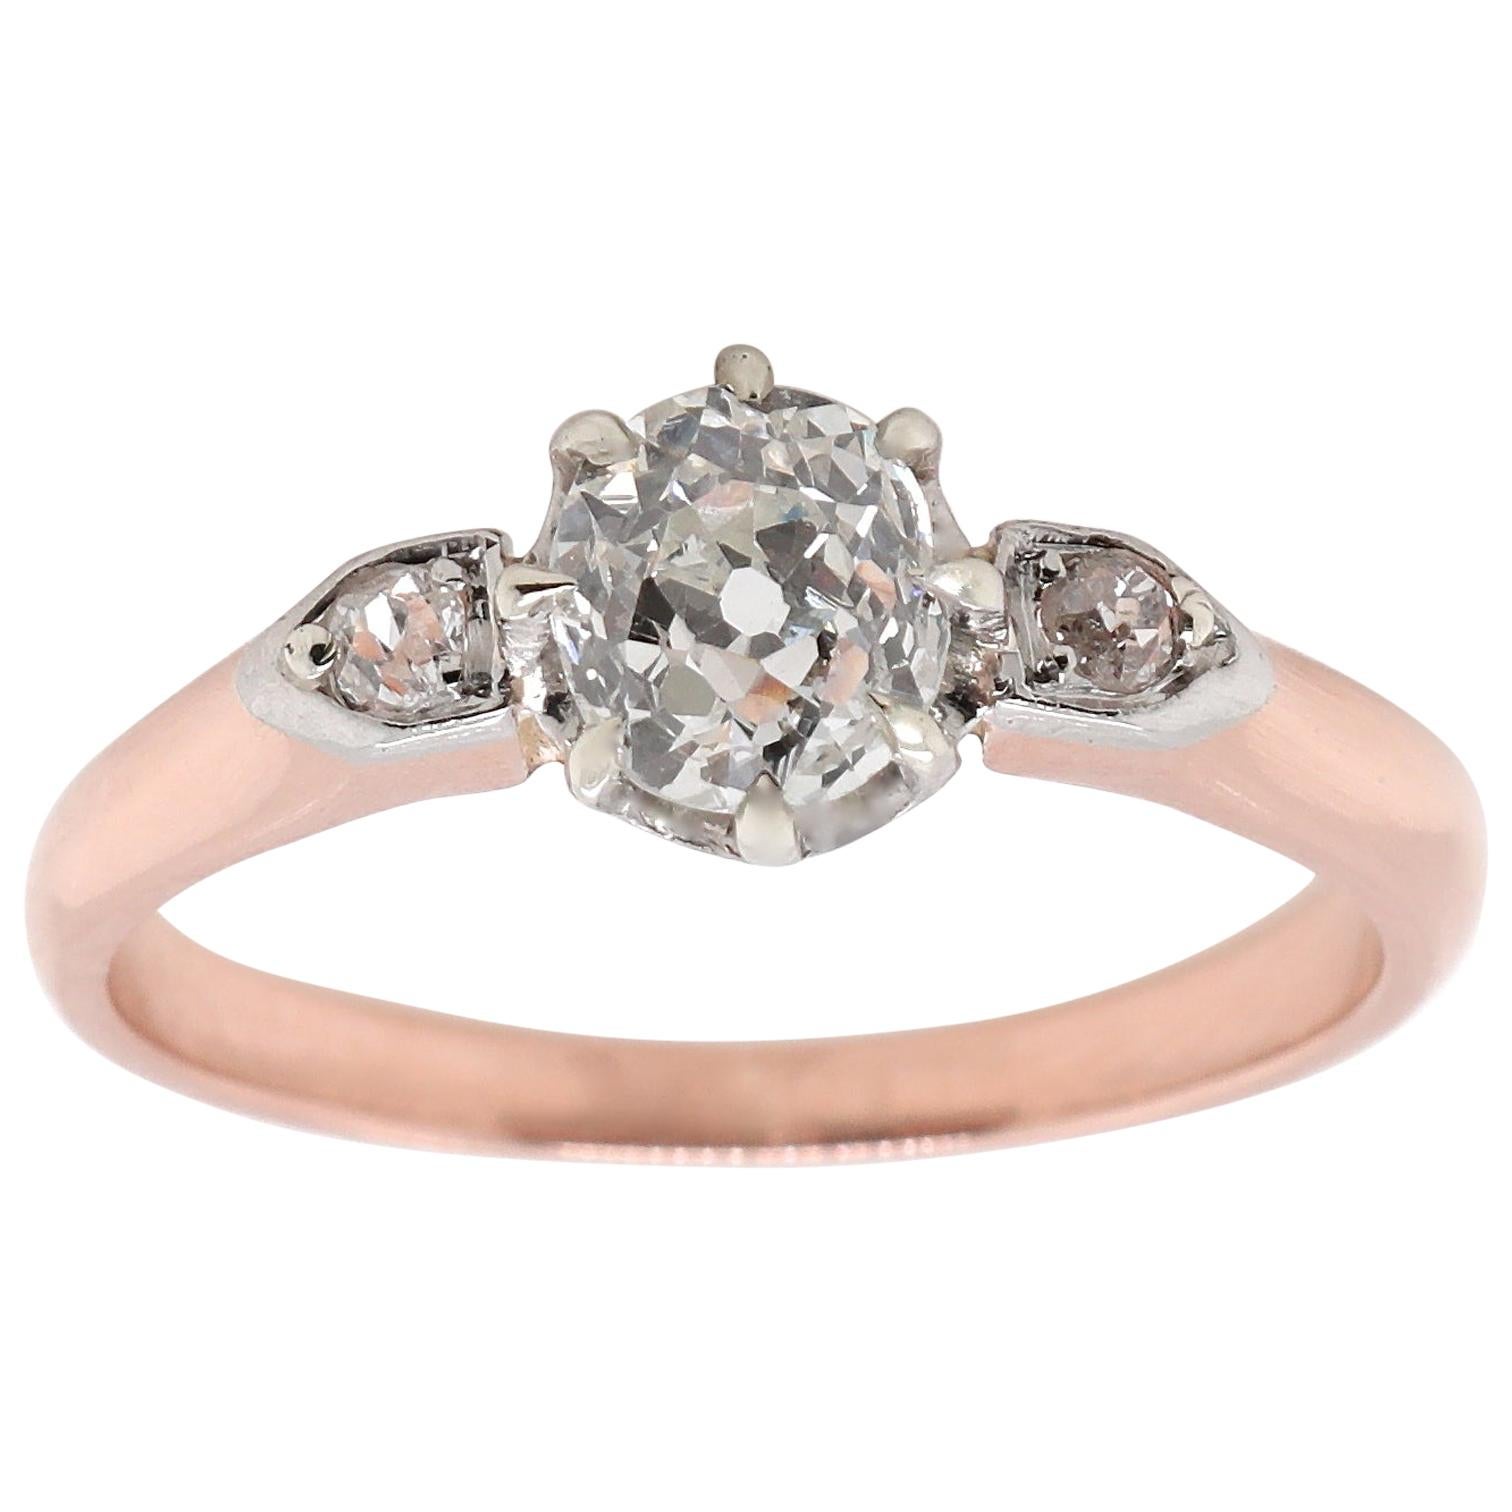 Edwardian GIA 0.84 Old Mine Cut Diamond 18 Karat Rose Gold Ring